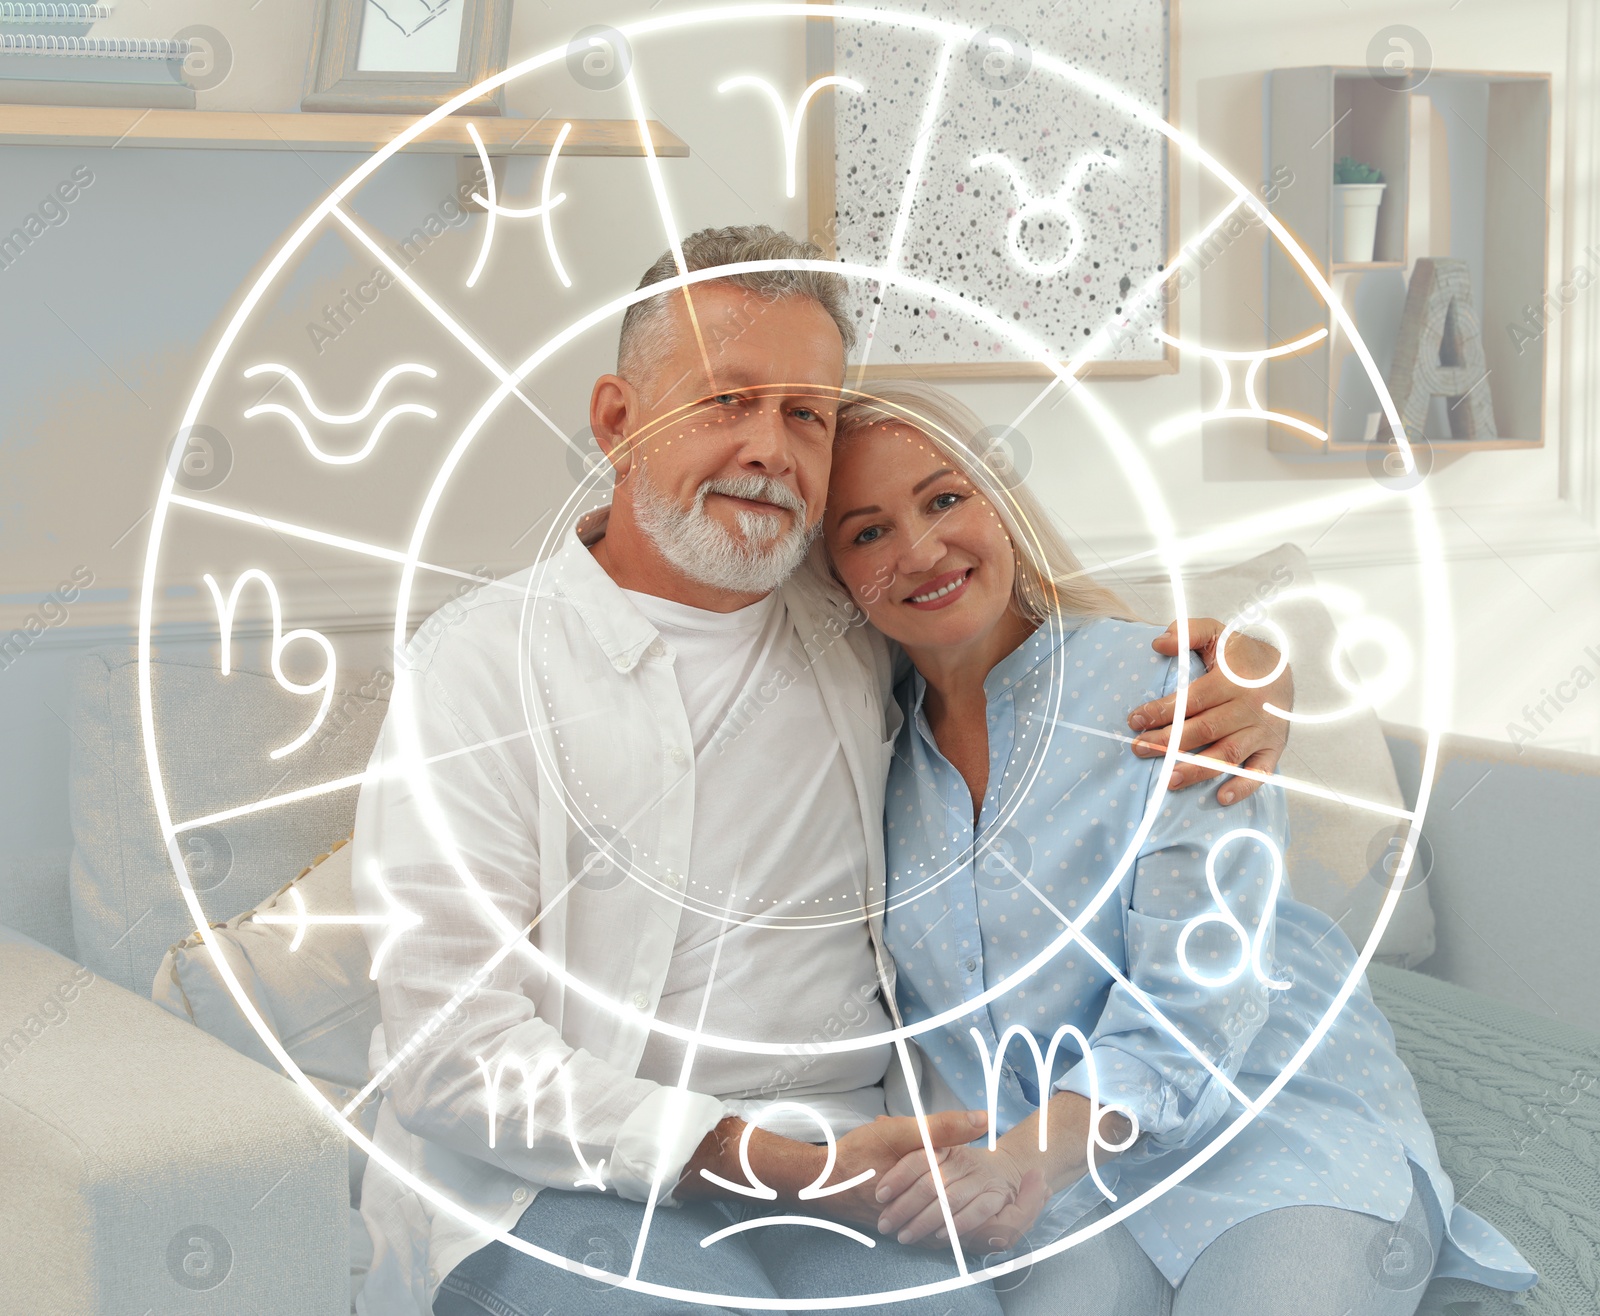 Image of Horoscope compatibility. Senior couple indoors and zodiac wheel